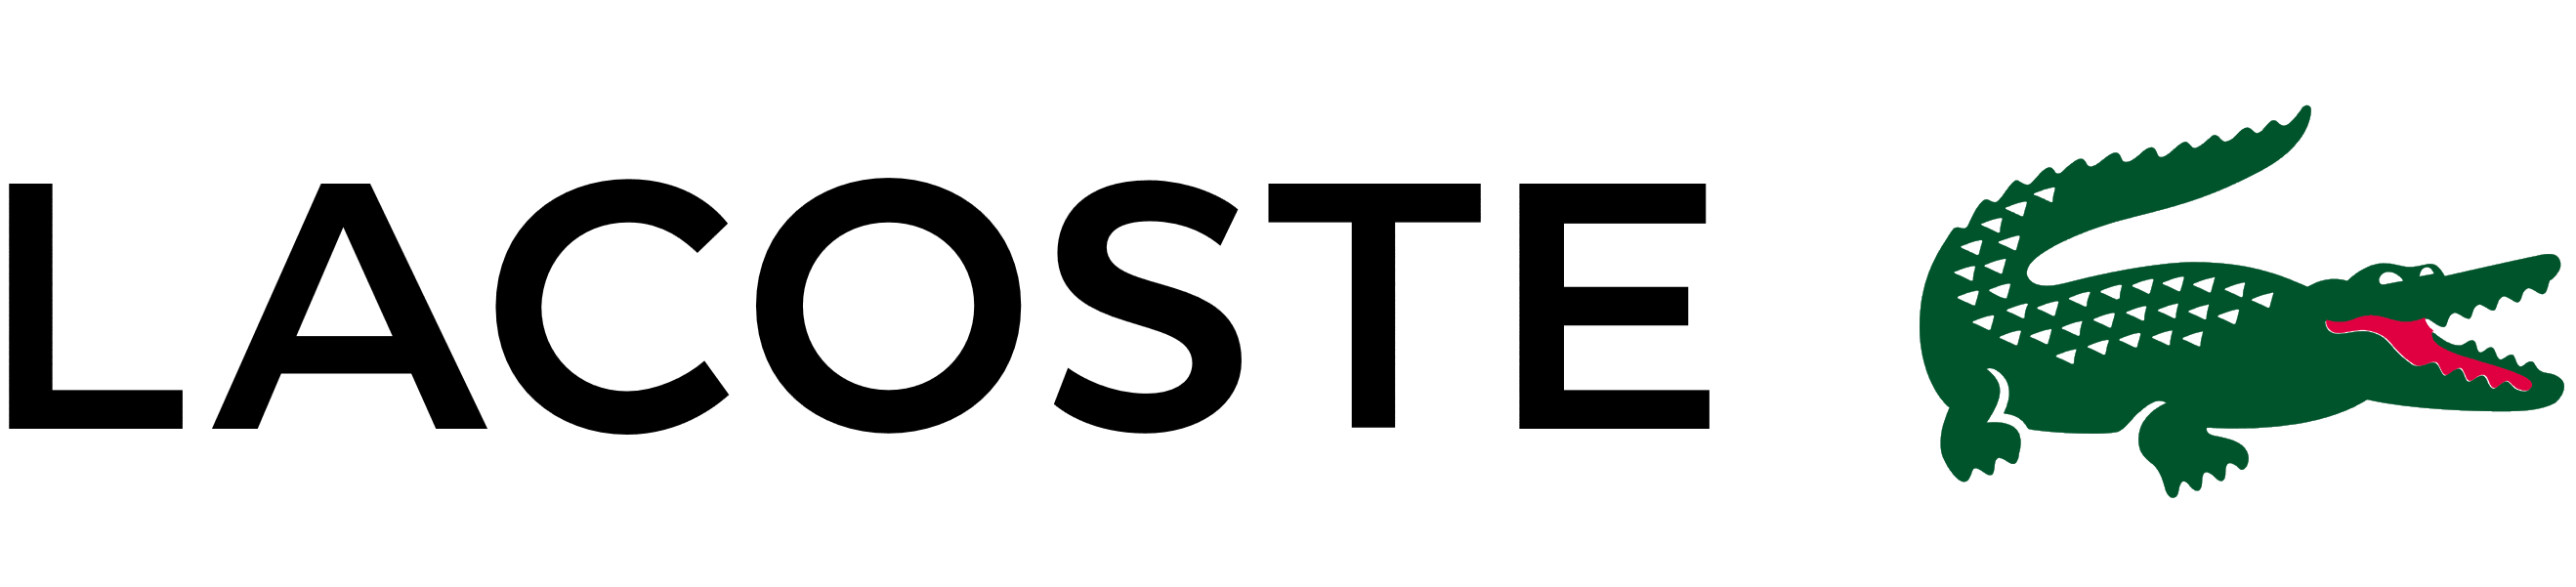 Lacoste logo, logotype